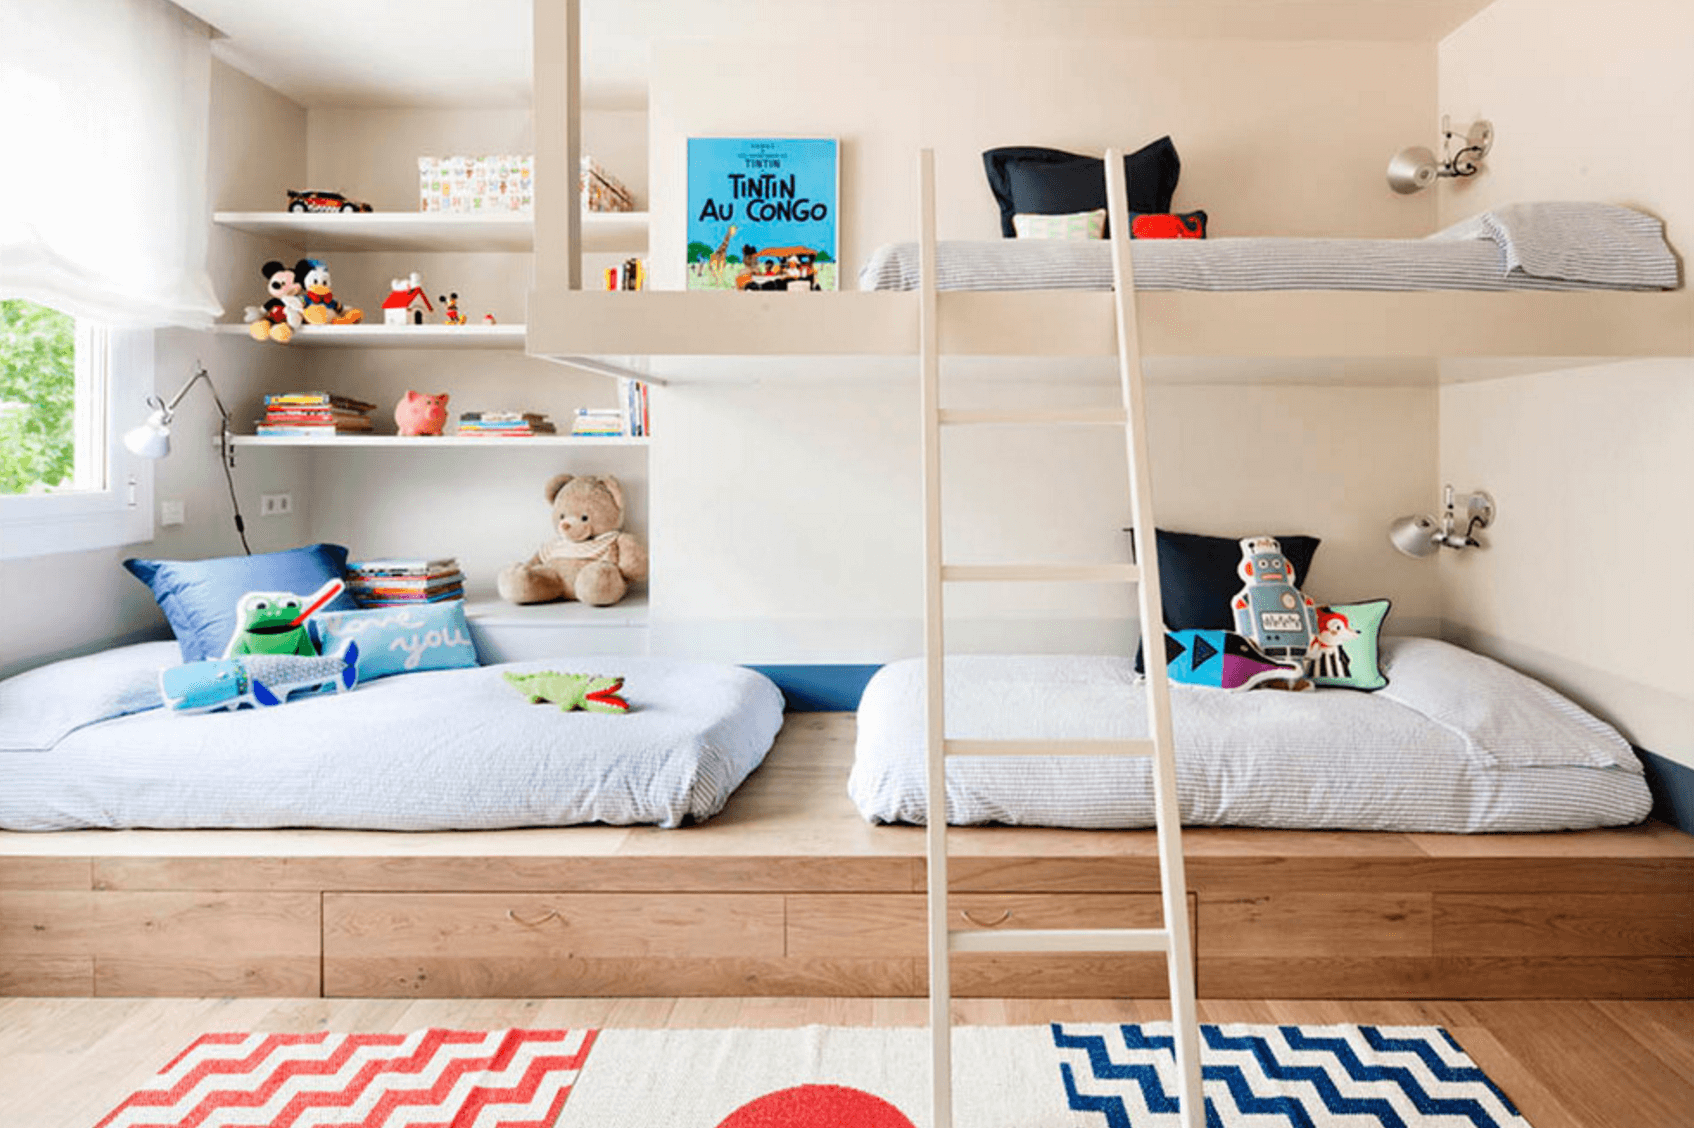  Giường tầng trong thiết kế nội thất là sự kết hợp một cách vui vẻ giữa công năng sử dụng và giải pháp tiết kiệm không gian tối đa cho phòng ngủ.